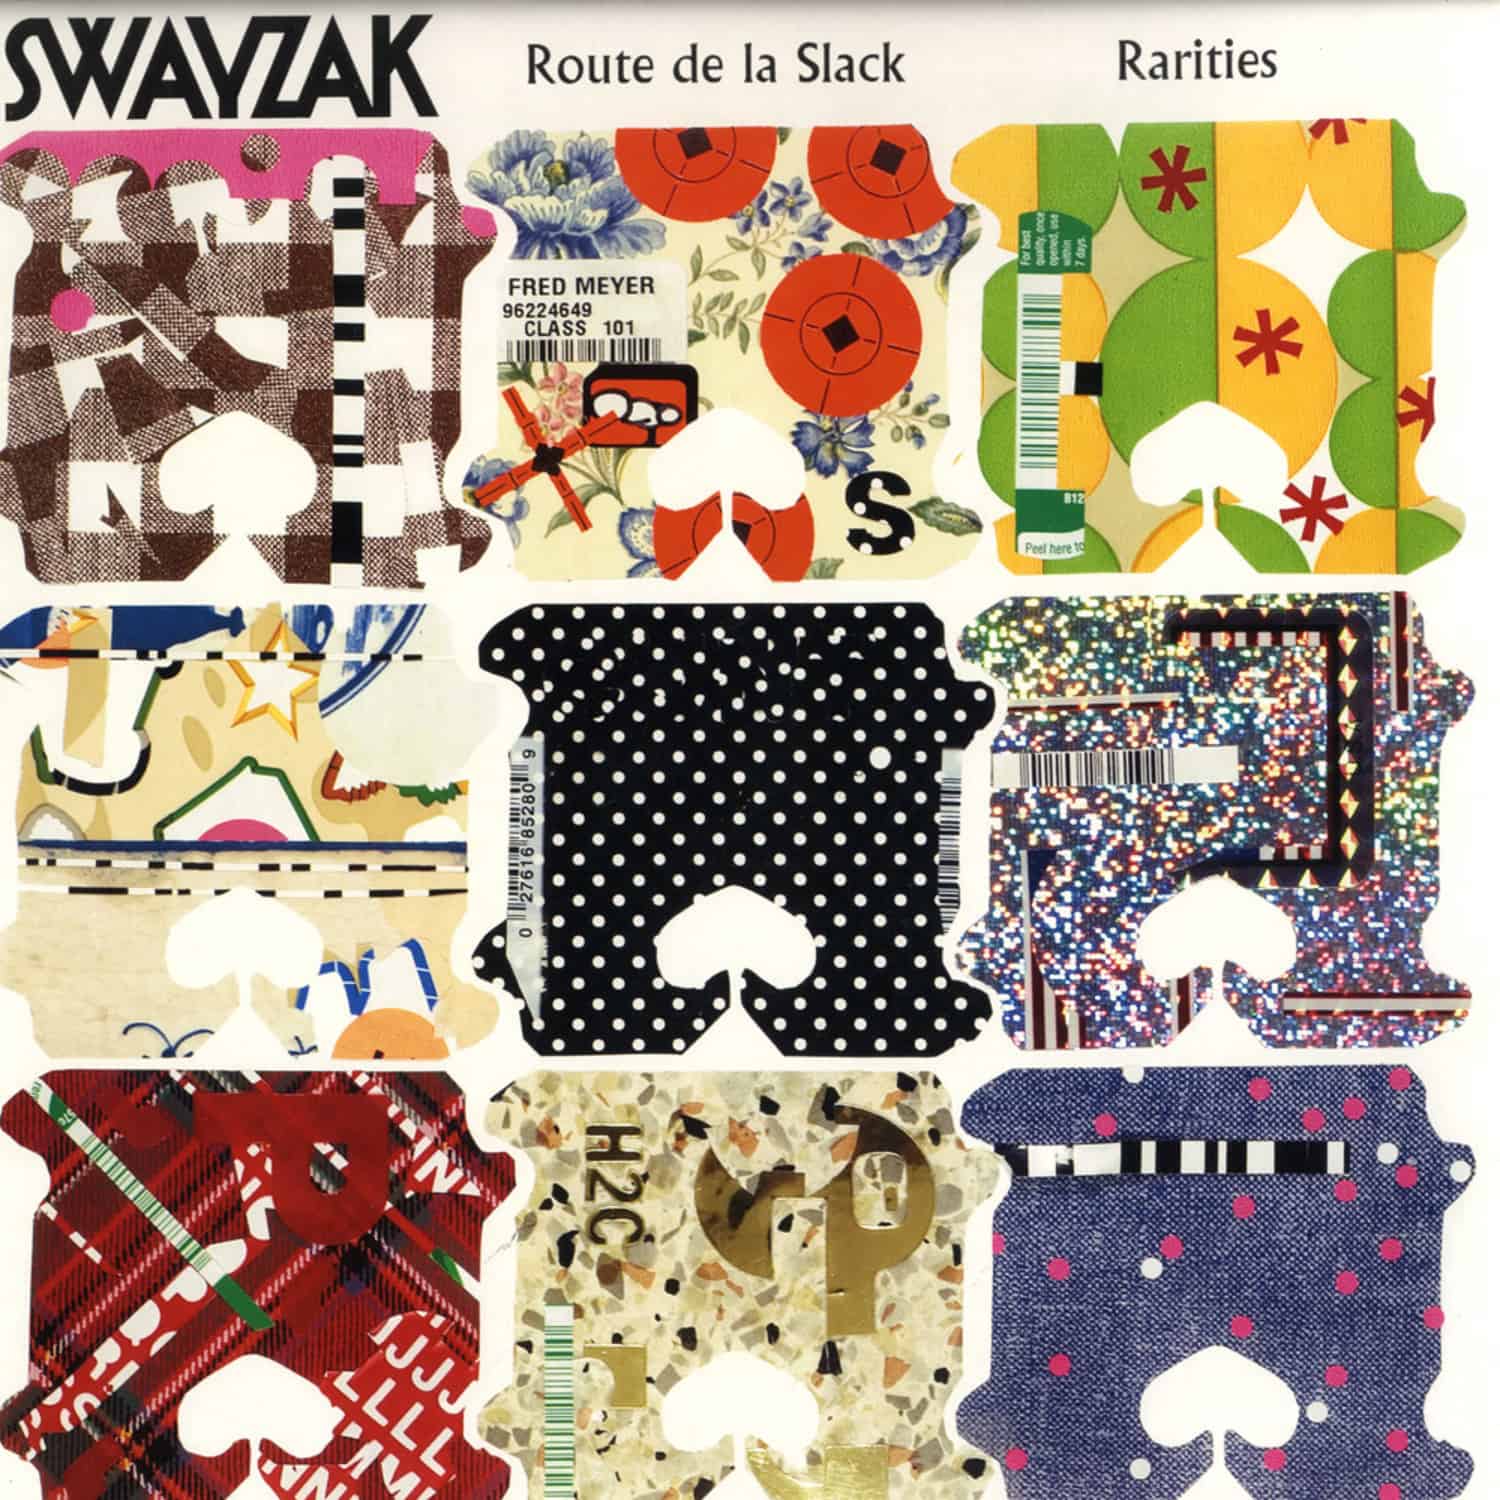 Swayzak - ROUTE DE LA SLACK RARITIES